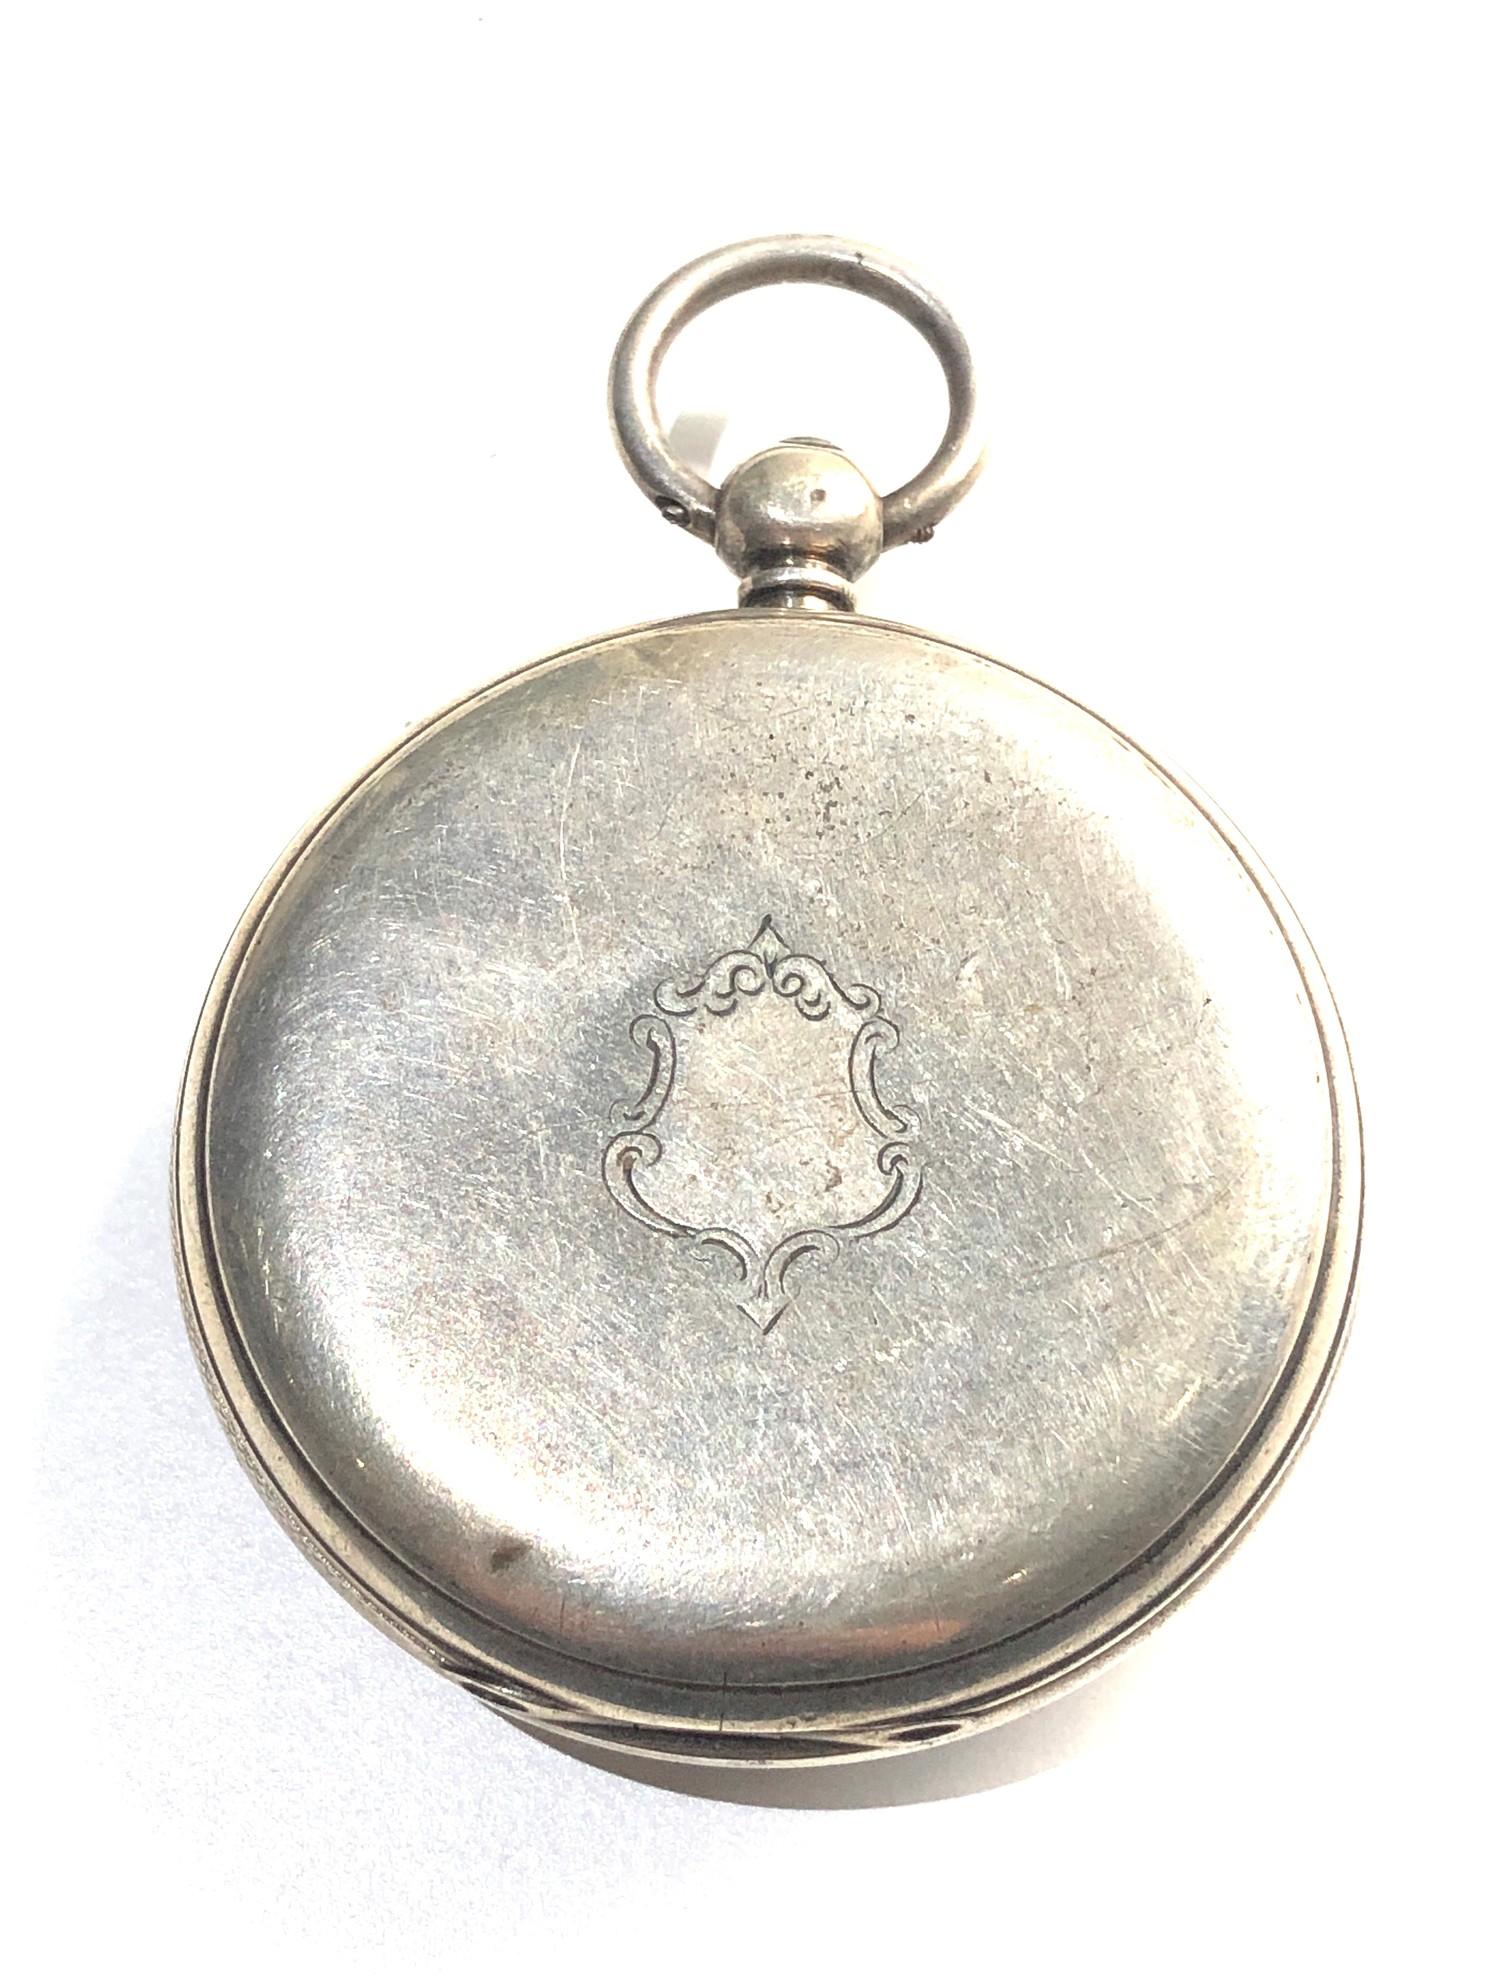 Antique silver fusee pocket watch by Jas Porter Glasgow - Bild 2 aus 4